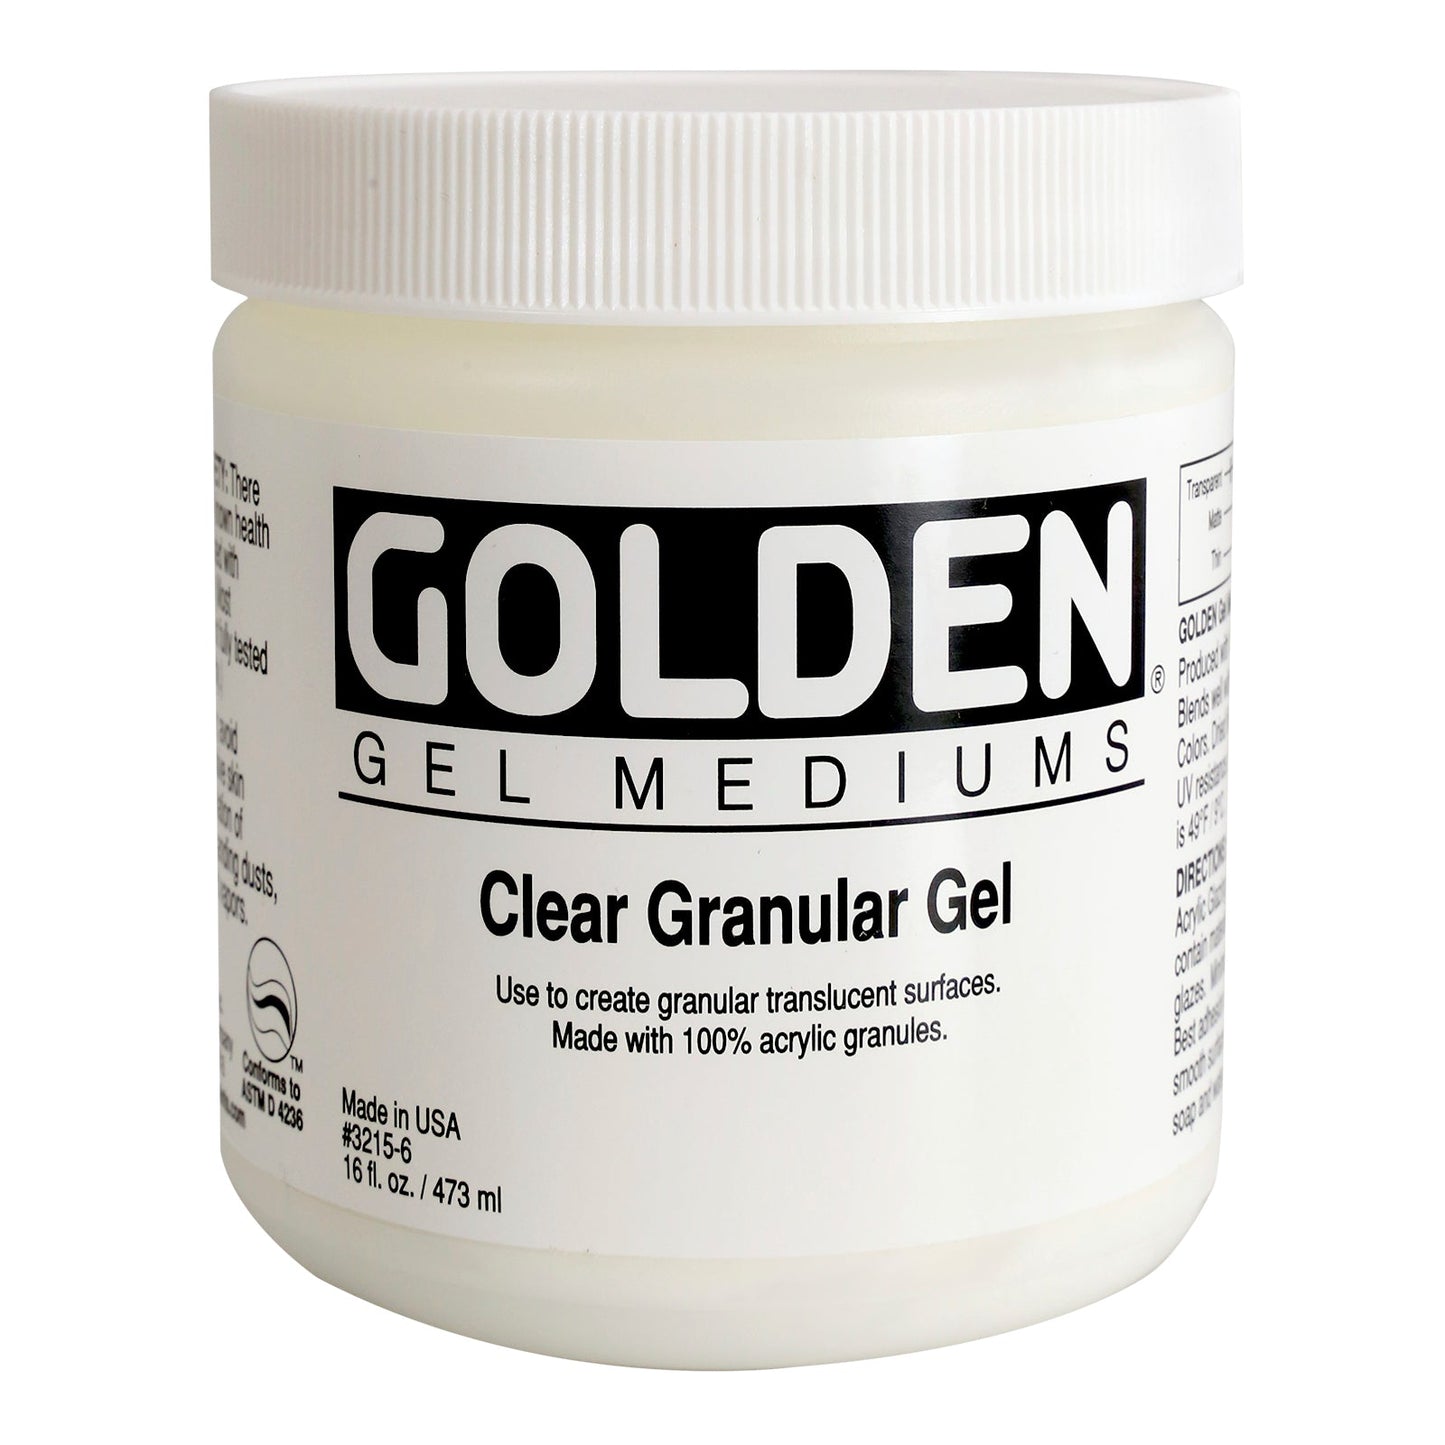 Golden Clear Granular Gel 473ml - theartshop.com.au